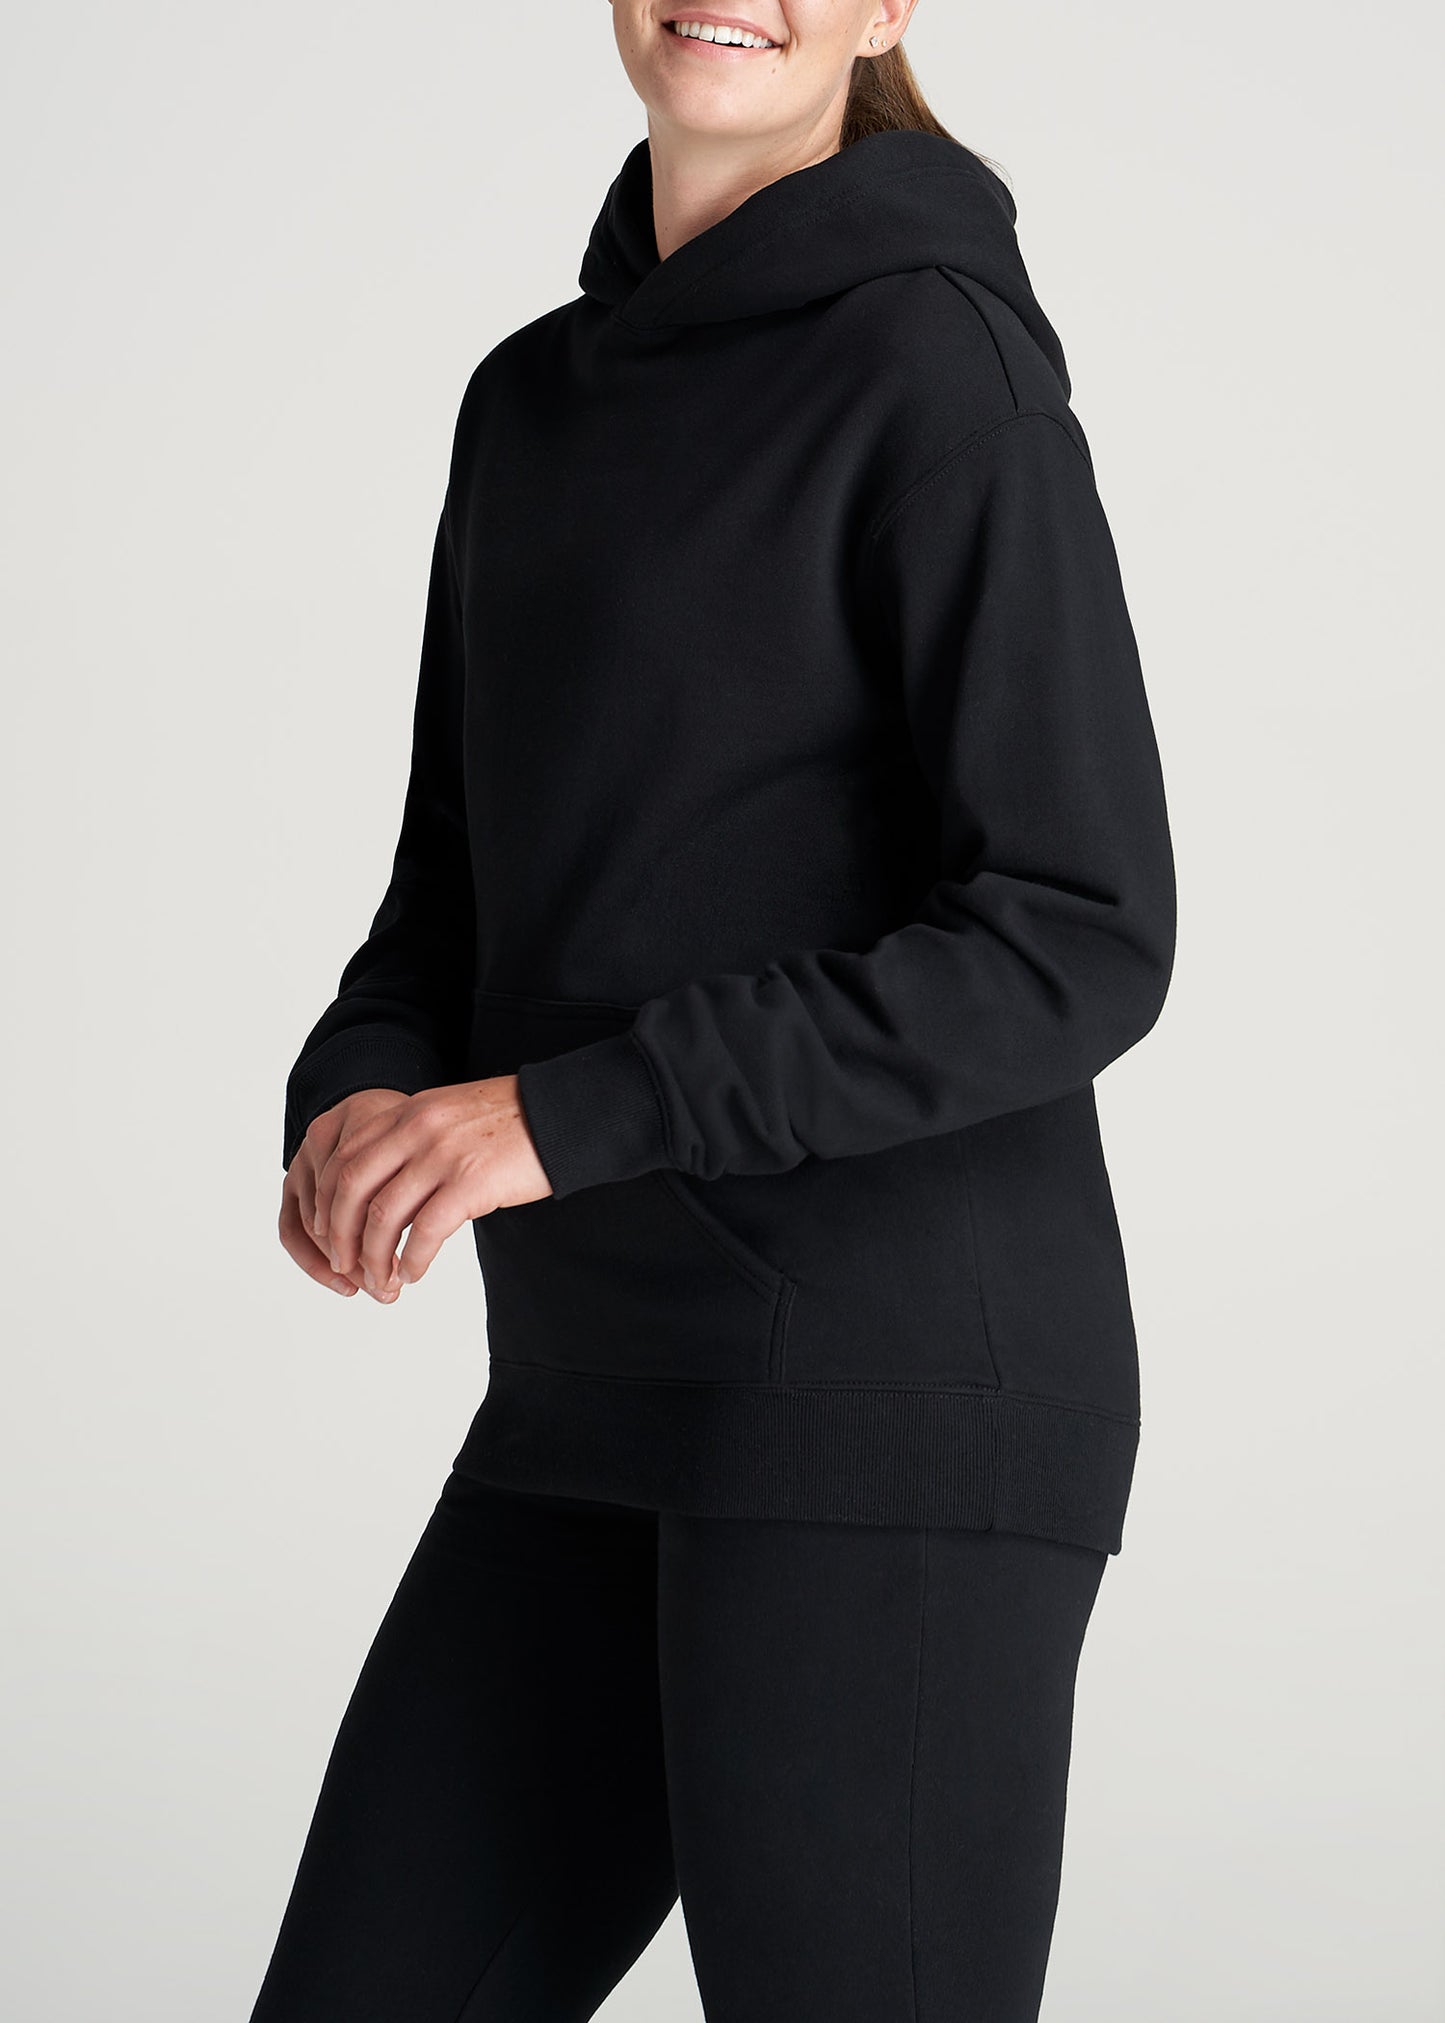 Women's Fleece Lounge Sweatshirt - Colsie Black XS 1 ct